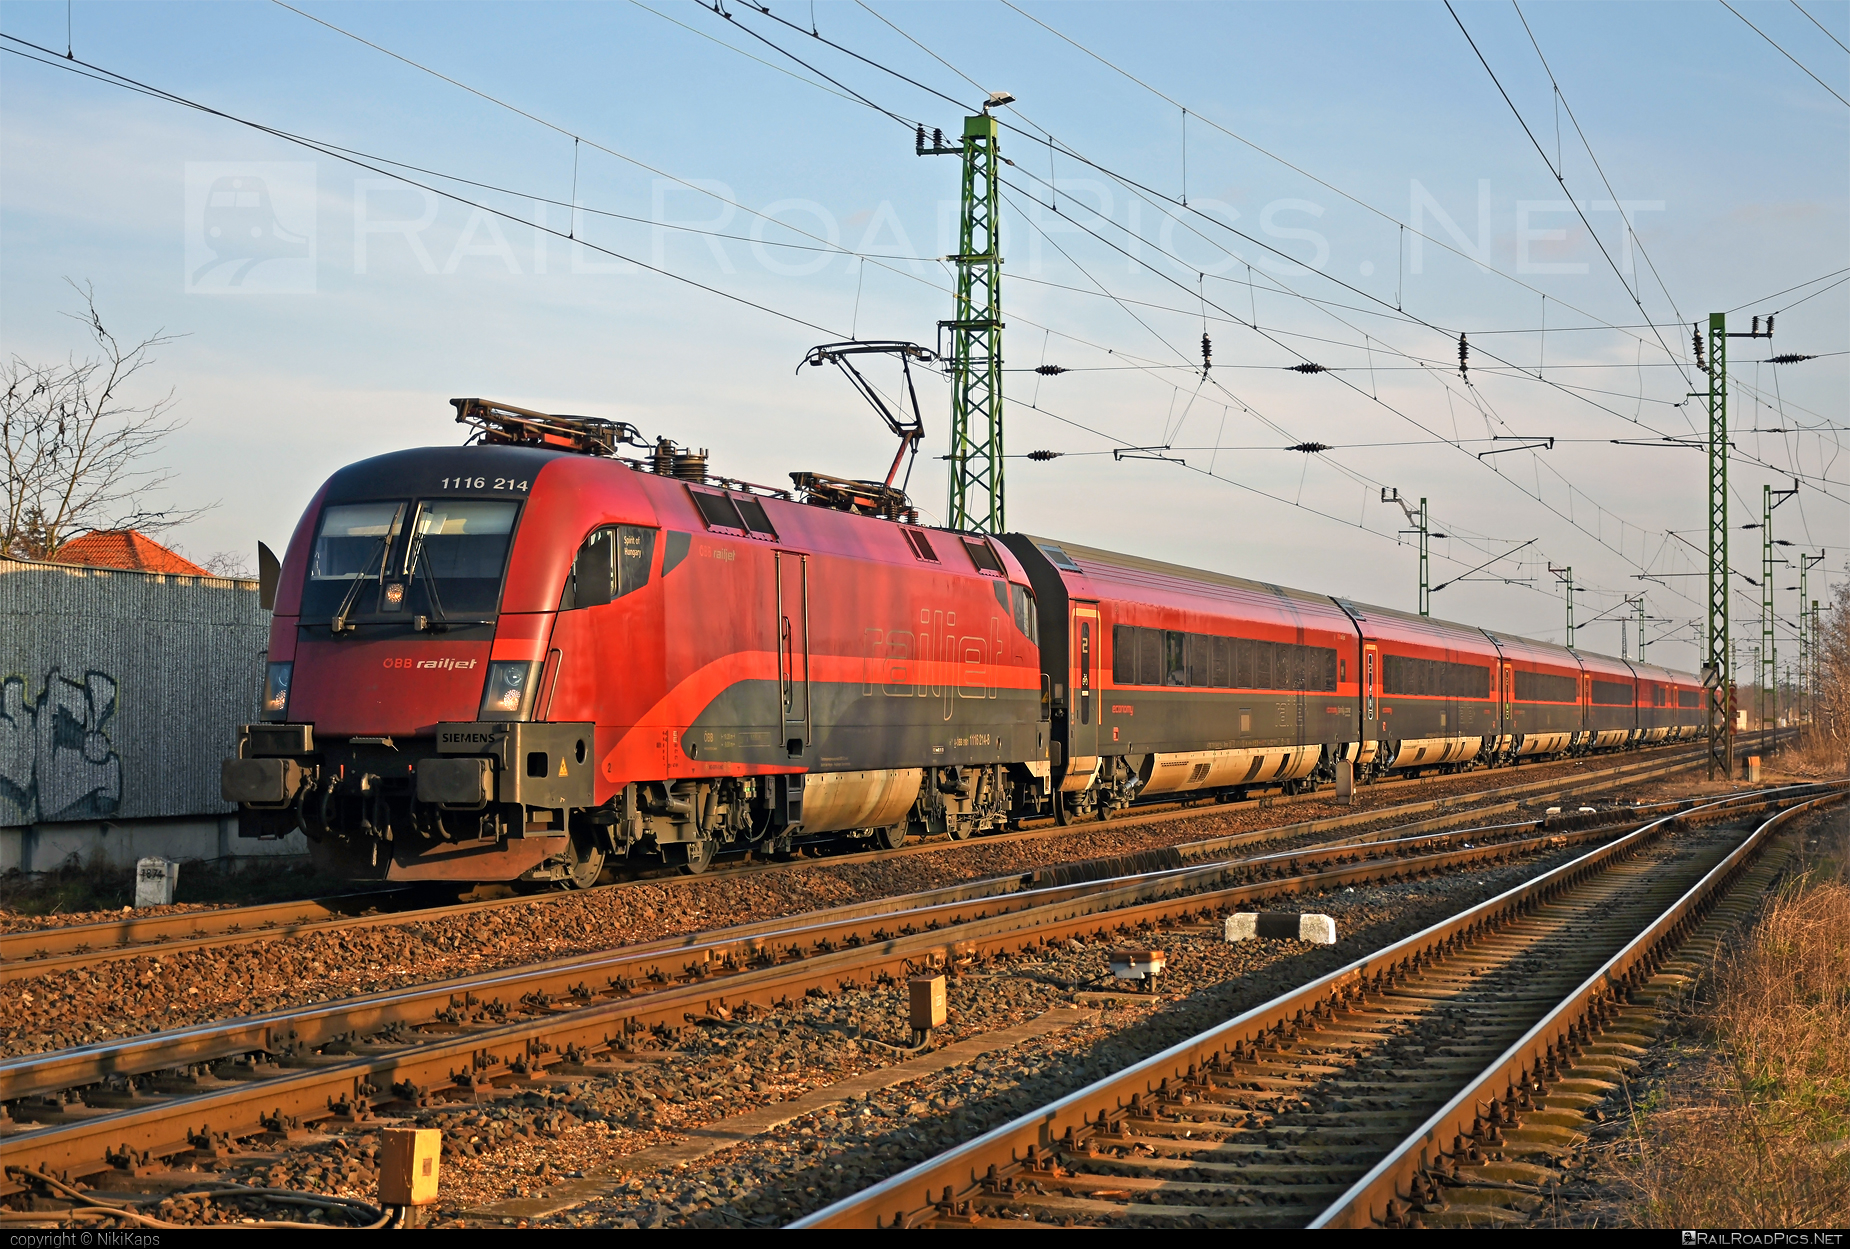 Siemens ES 64 U2 - 1116 214 operated by Österreichische Bundesbahnen #es64 #es64u2 #eurosprinter #obb #obbrailjet #osterreichischebundesbahnen #railjet #siemens #siemensEs64 #siemensEs64u2 #siemenstaurus #taurus #tauruslocomotive